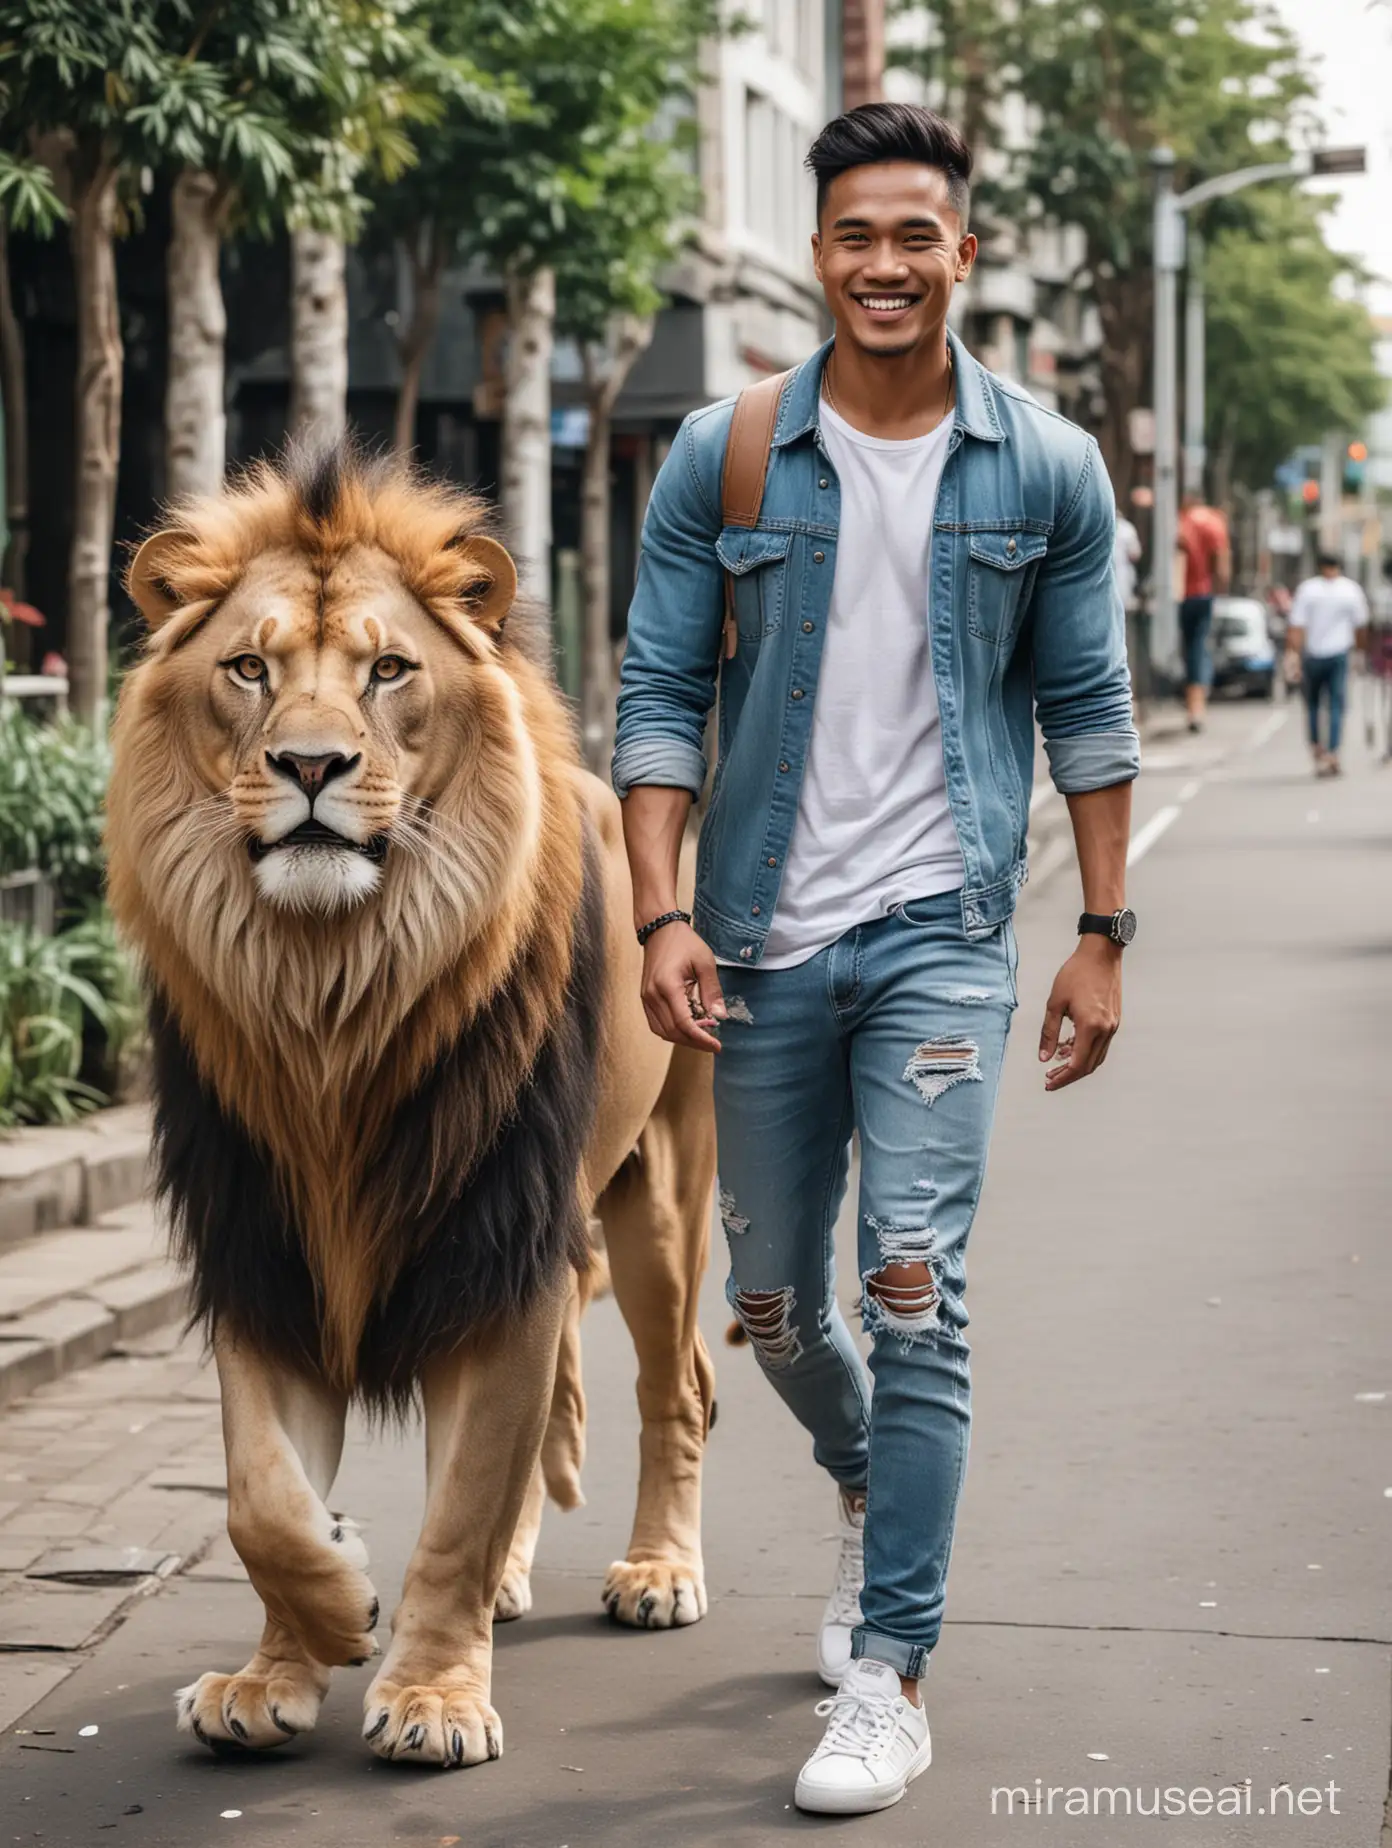 Seorang lelaki tampan indonesia tersenyum tipis, pakaian trendy, celana jeans robek, sepatu sport, sedang berjalan berdampingan dengan seekor singa di dalam kota, foto full body